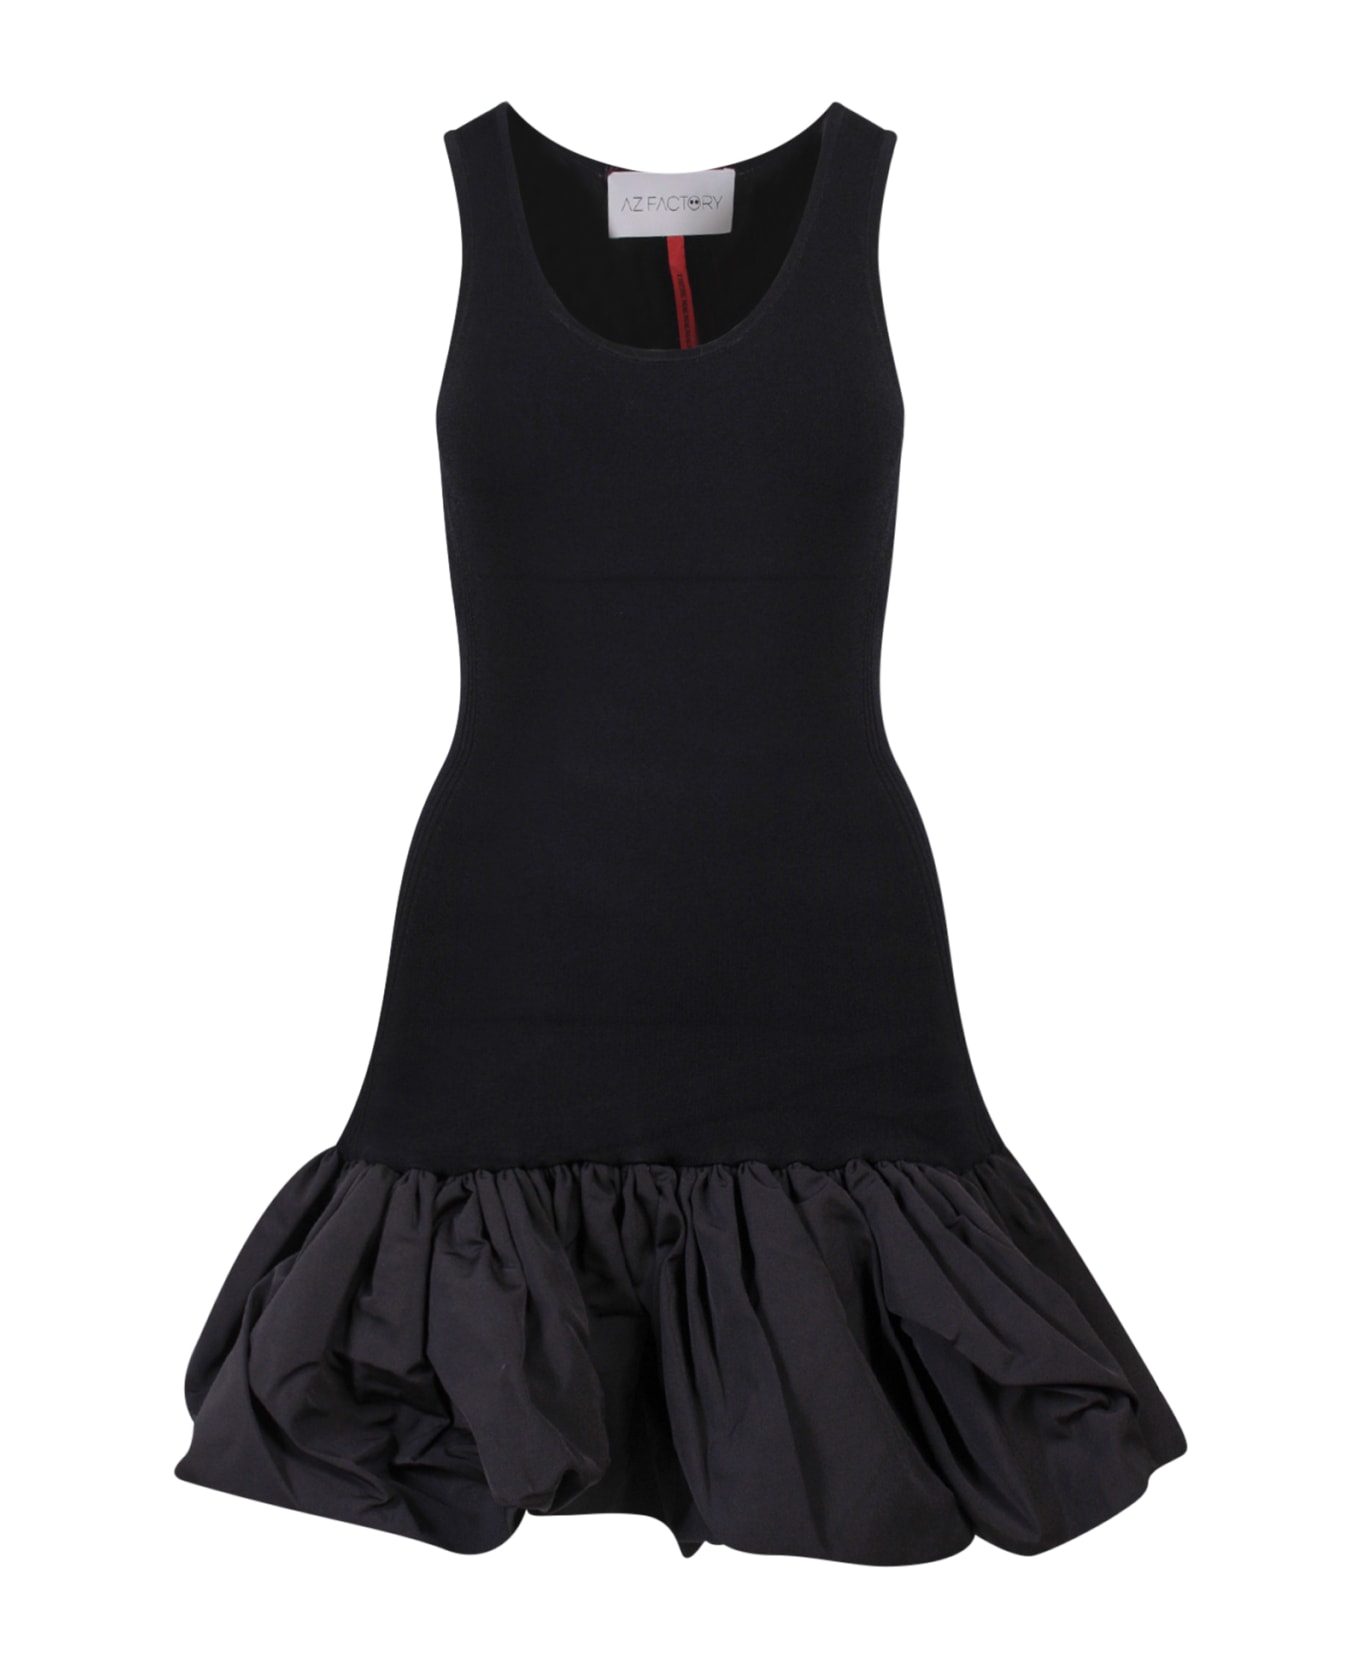 AZ Factory Dress - Black